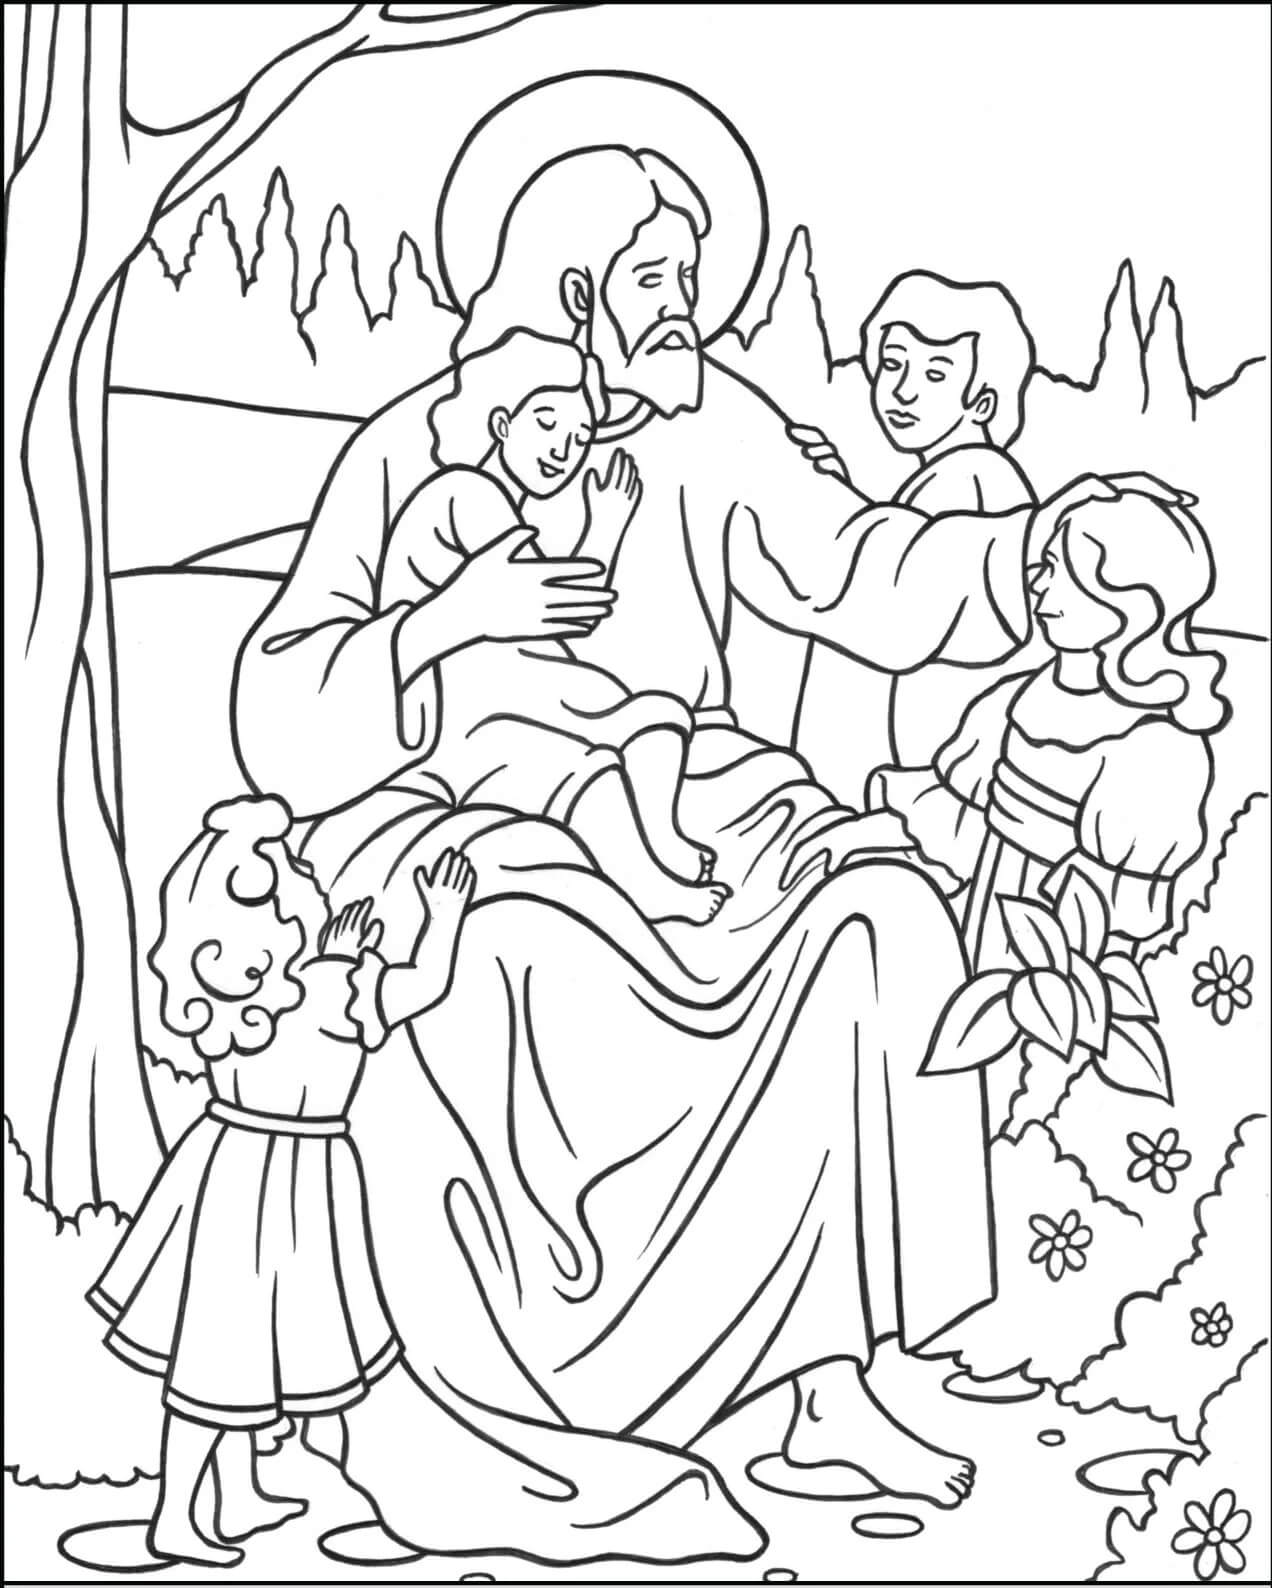 Dibujos de Jesús y Dejad a los Niños Pequeños para colorear